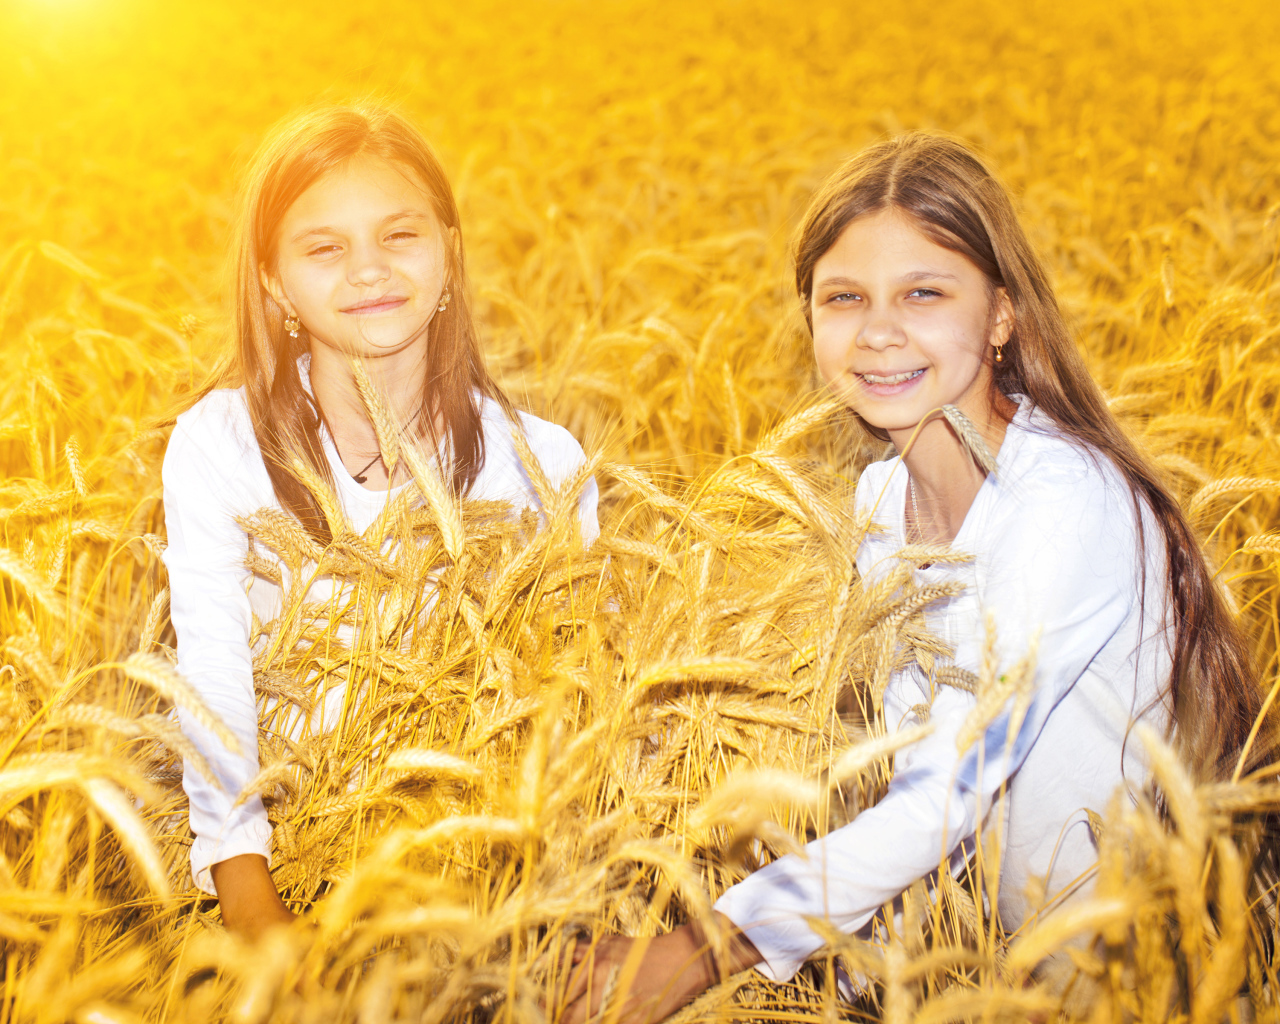 Две улыбающиеся девочки на поле с пшеницей